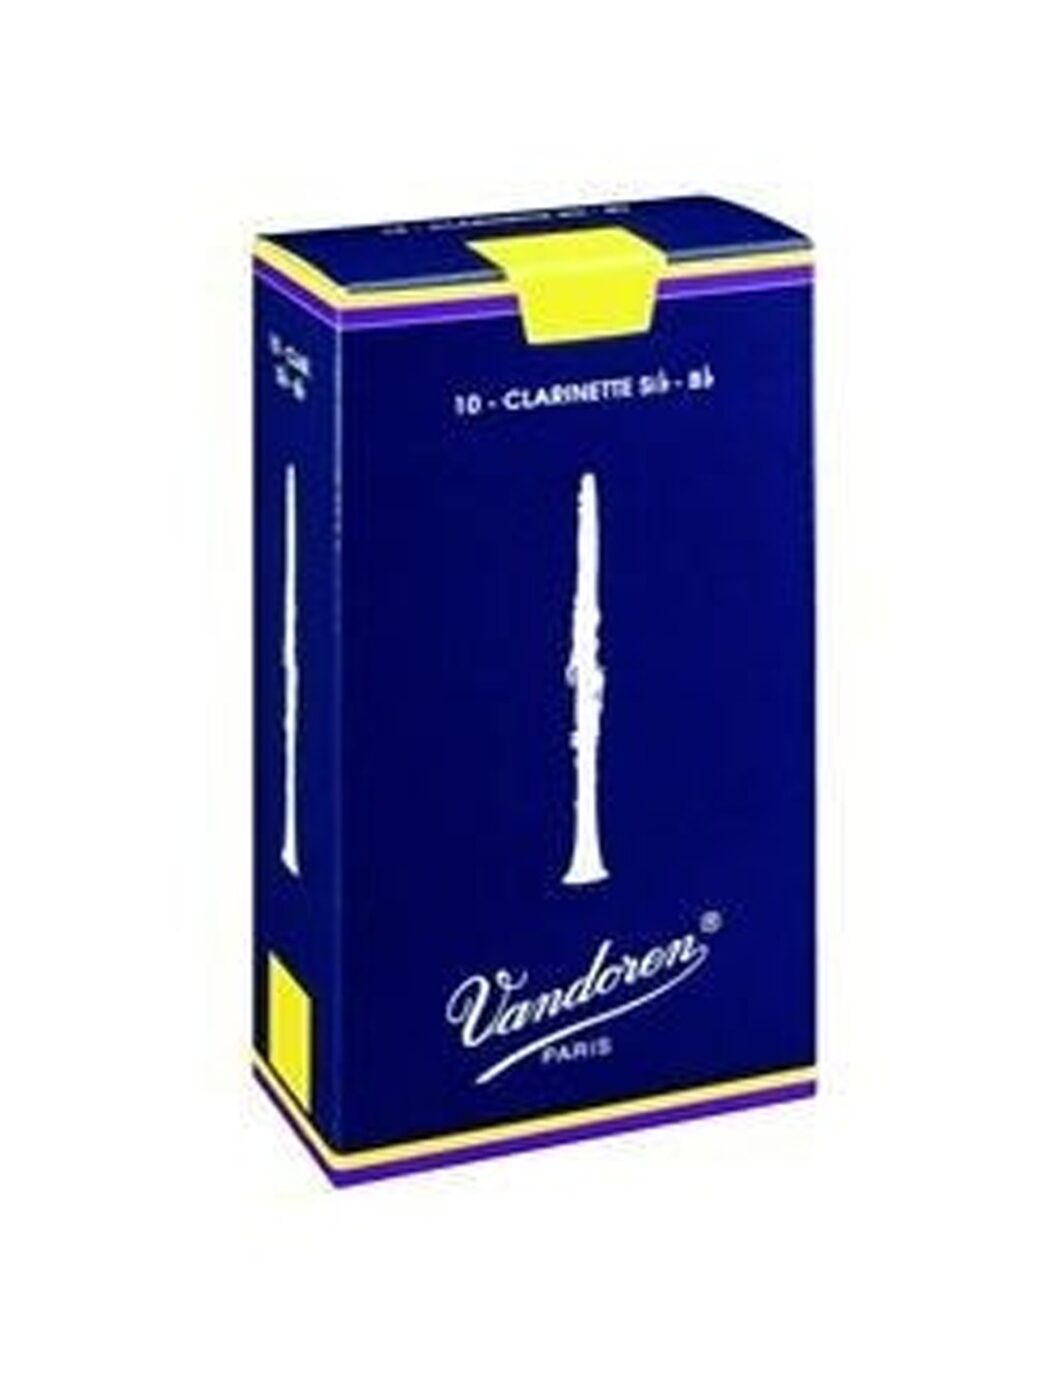 Vandoren Ancia classica per clarinetto Sib-Bb 2